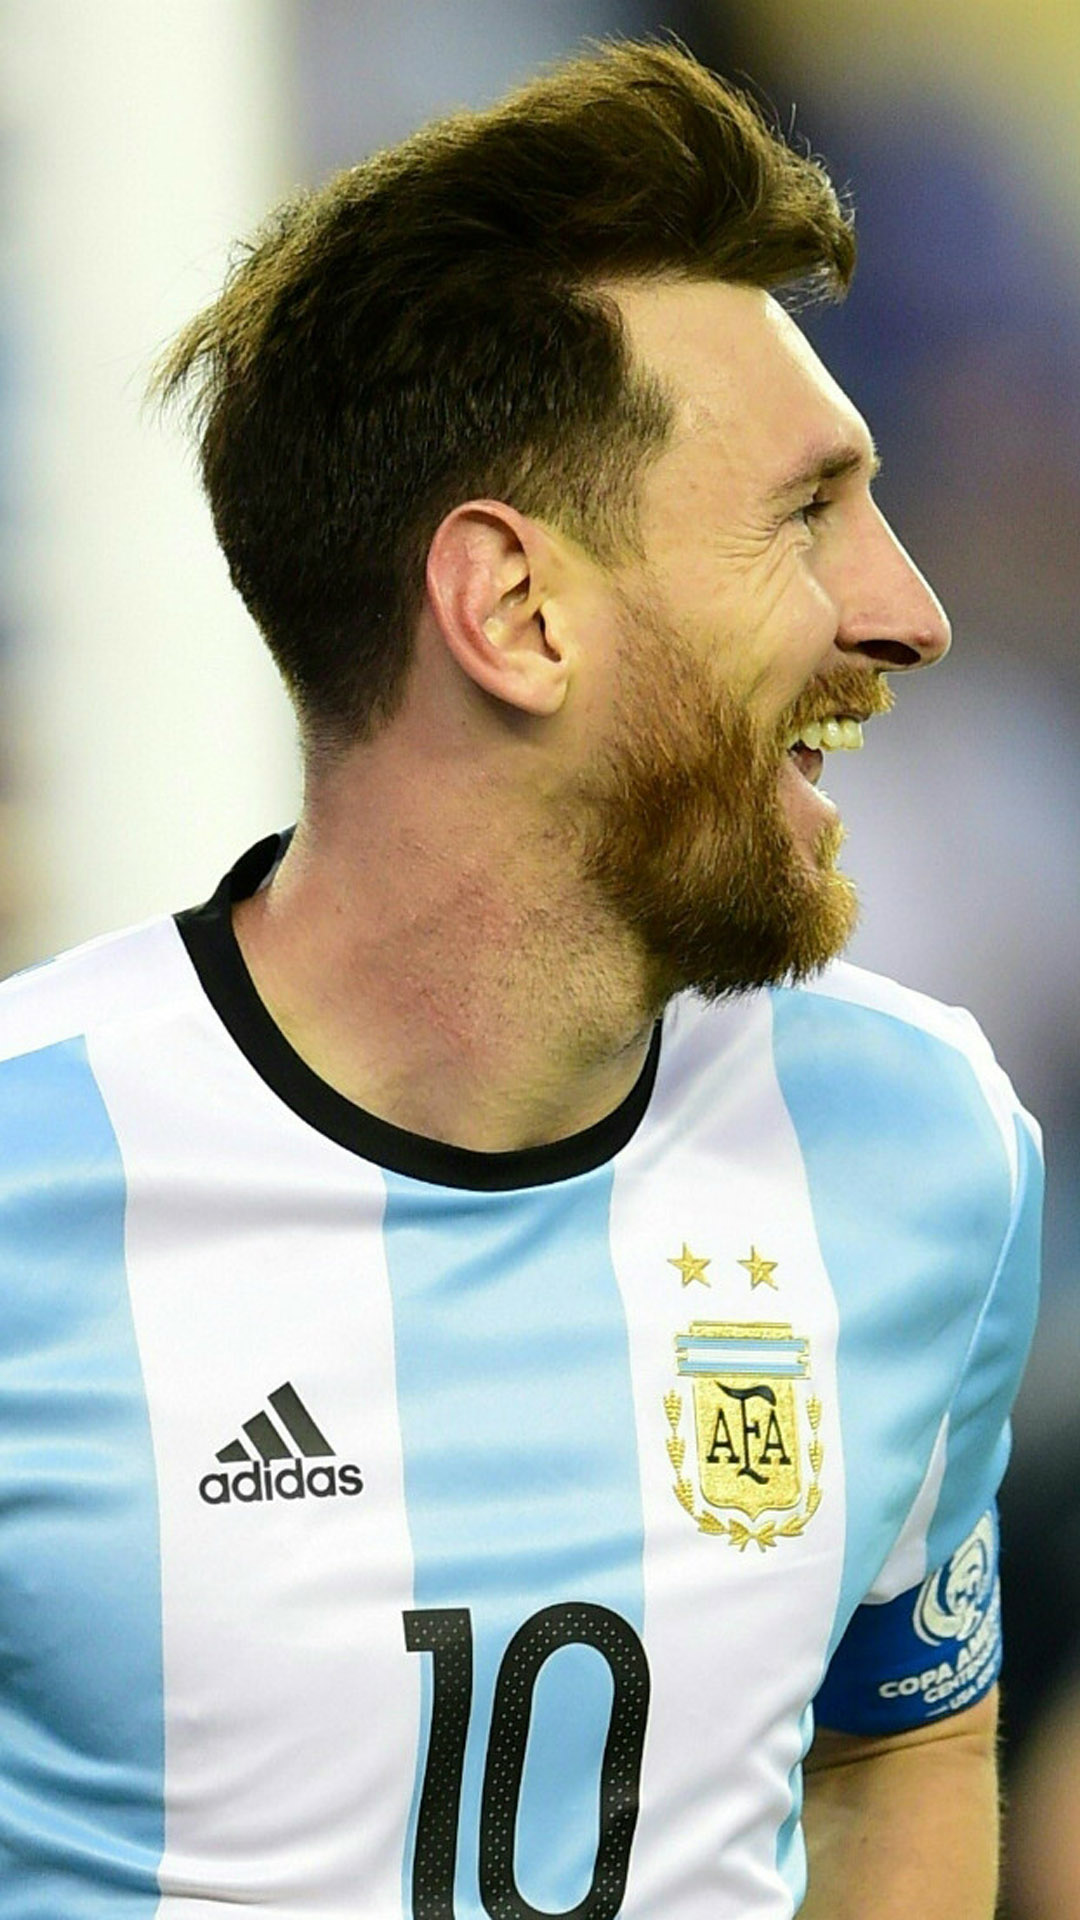 Messi luôn là cái tên sáng giá của bóng đá thế giới, và khi được kết hợp với đội tuyển Argentina càng tạo ra một sức hút đặc biệt. Bức hình nền 4k đầy màu sắc này sẽ khiến bạn thấy được vẻ đẹp của những người hùng bóng đá đích thực.